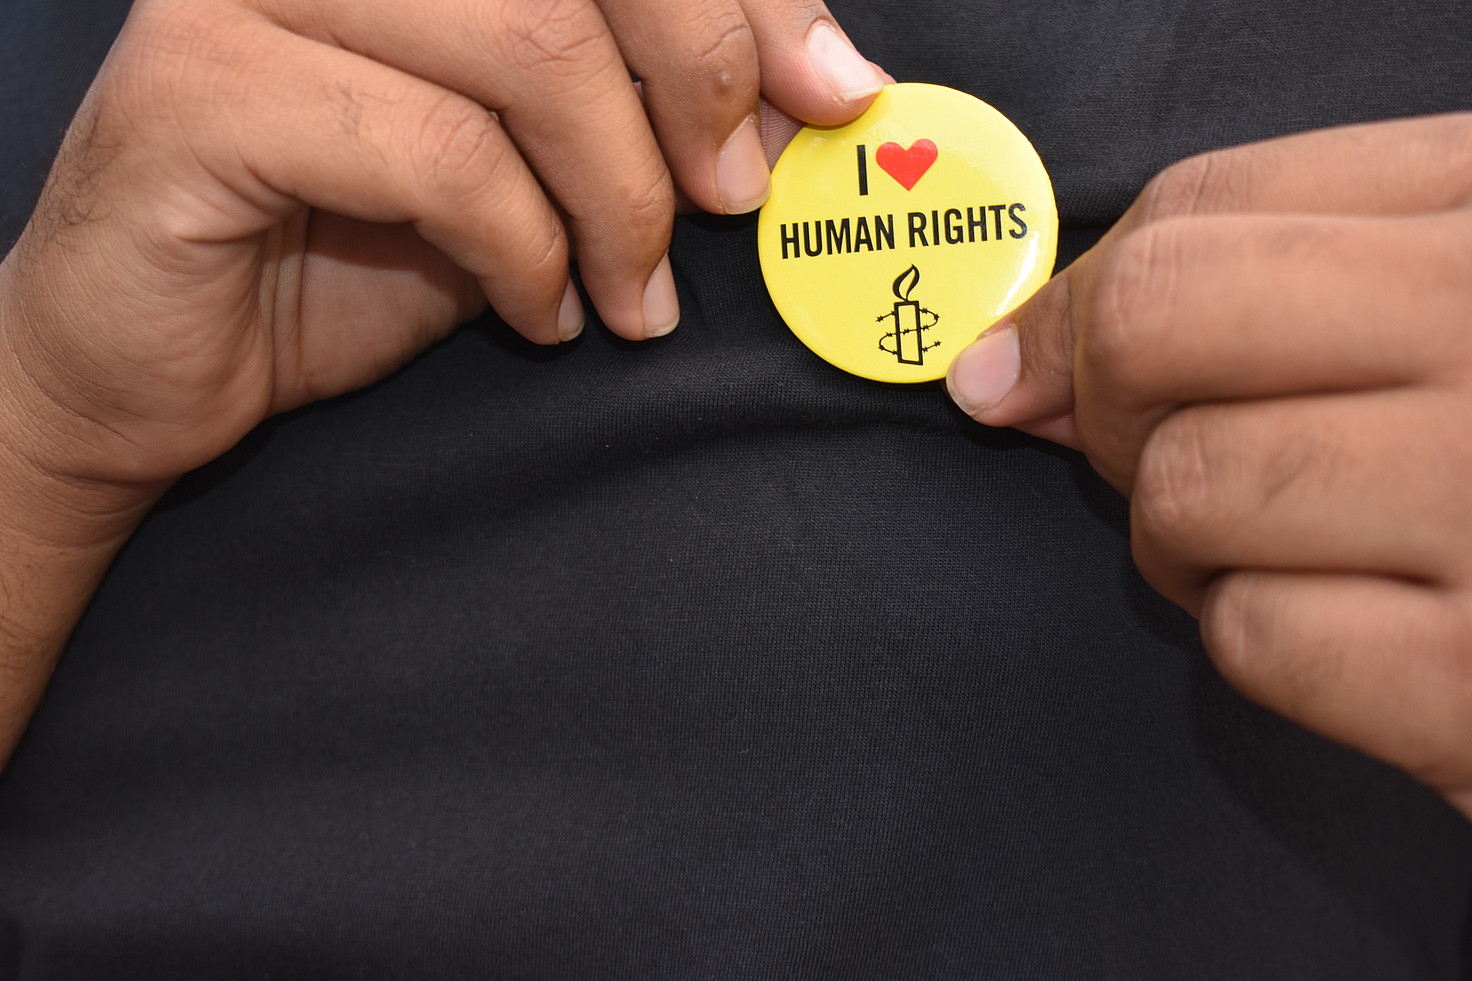 Mans con unha insignia que di "Amo os dereitos humanos" 